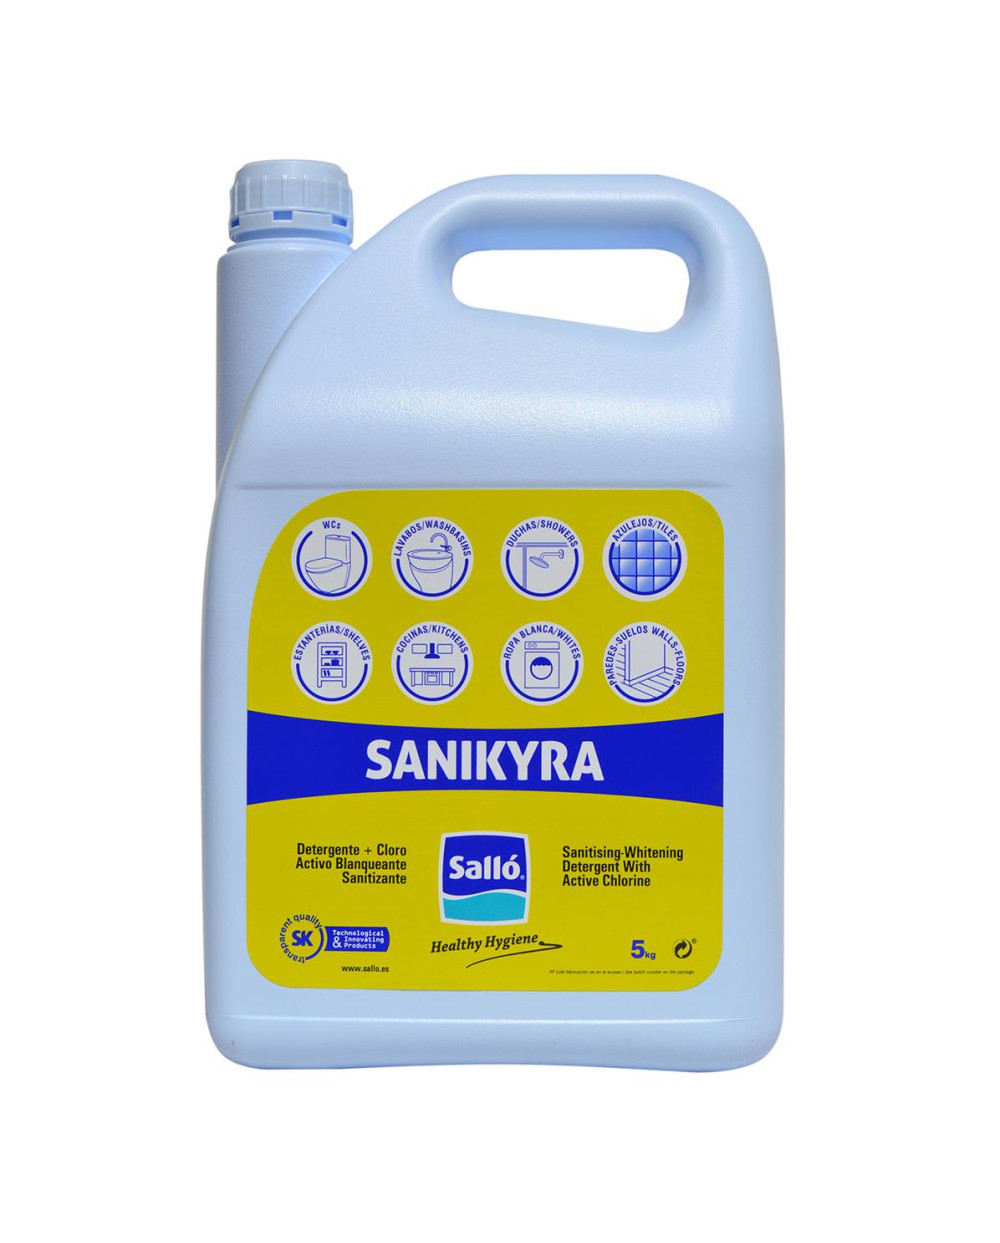 Detergente superficies Sanikyra - 5 kg